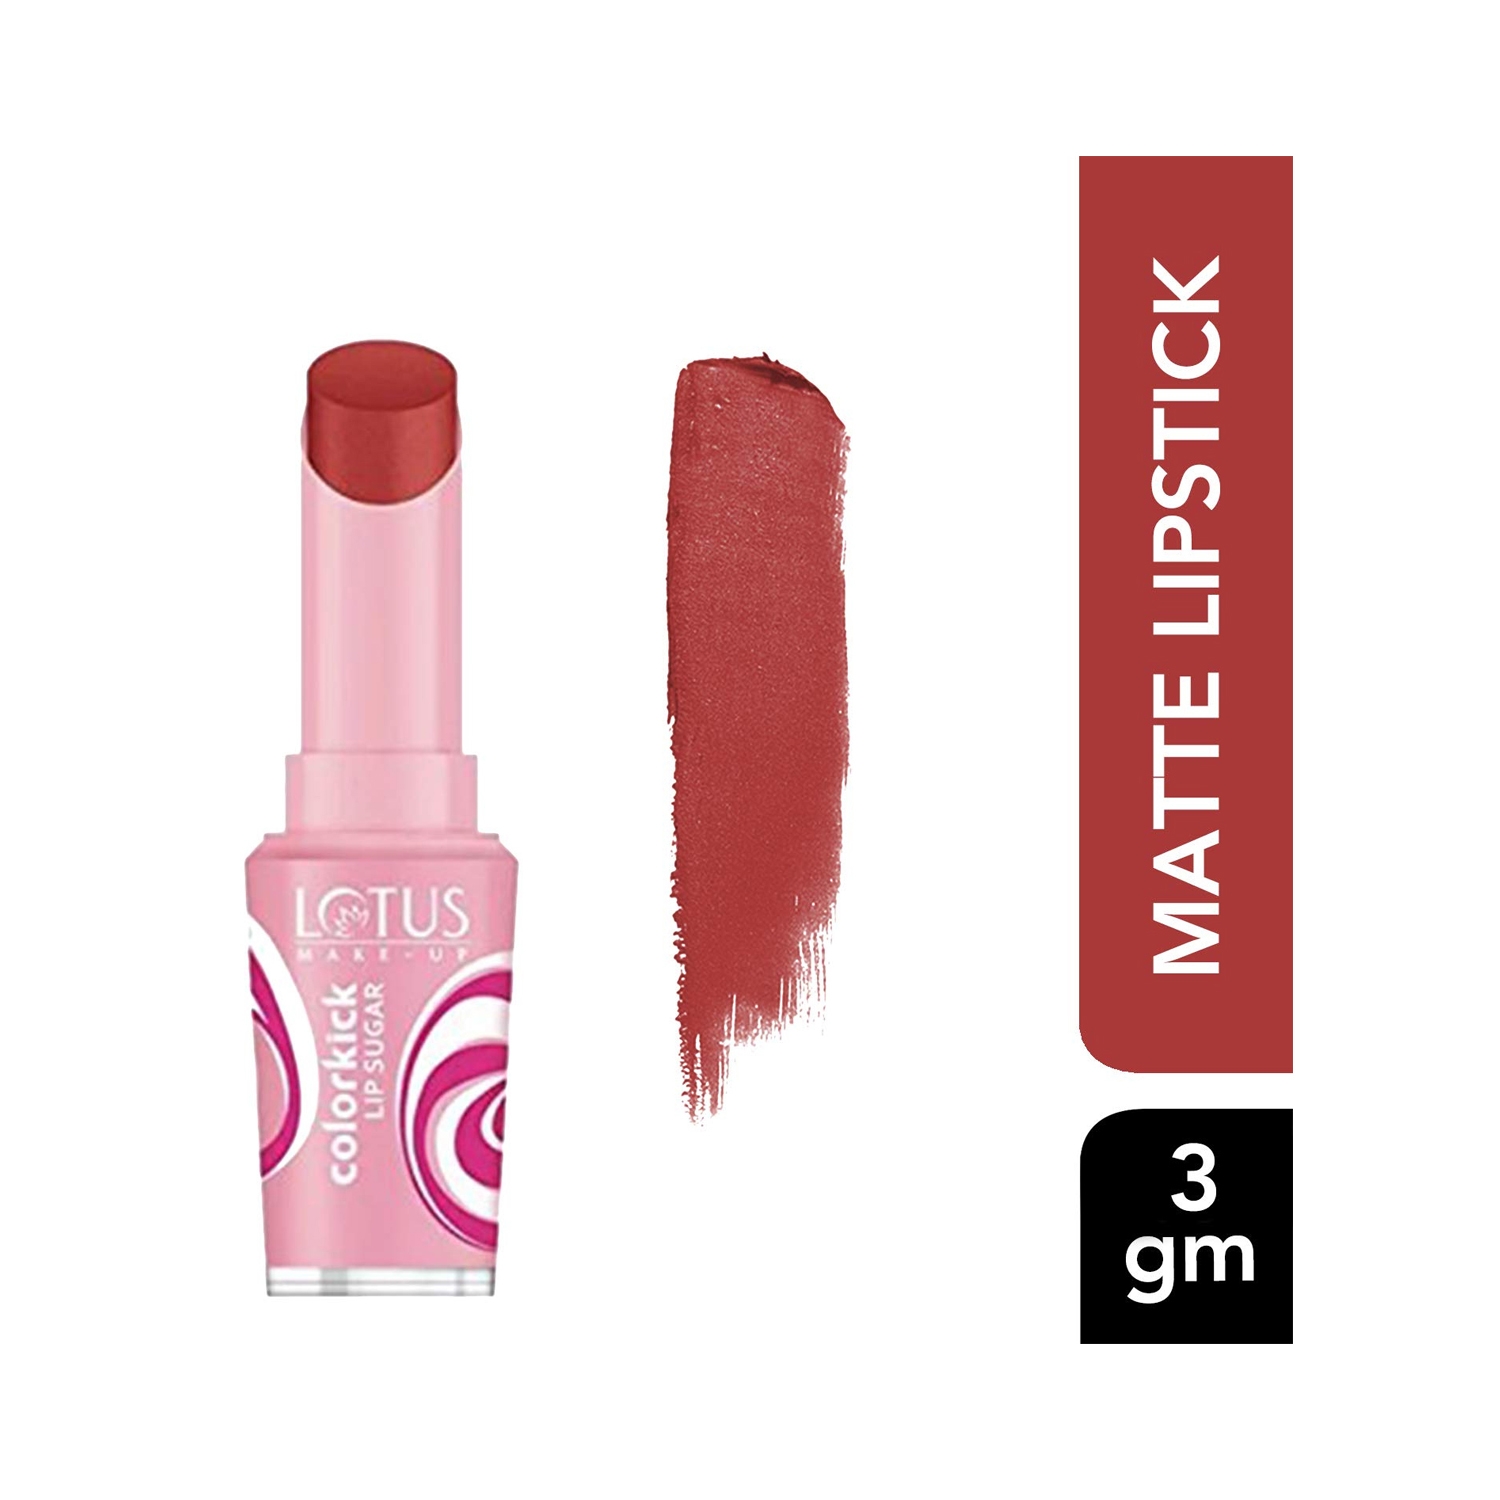 Lotus | Lotus Makeup Colorkick Lip Sugar SPF 20 - S1 Rose (3g)